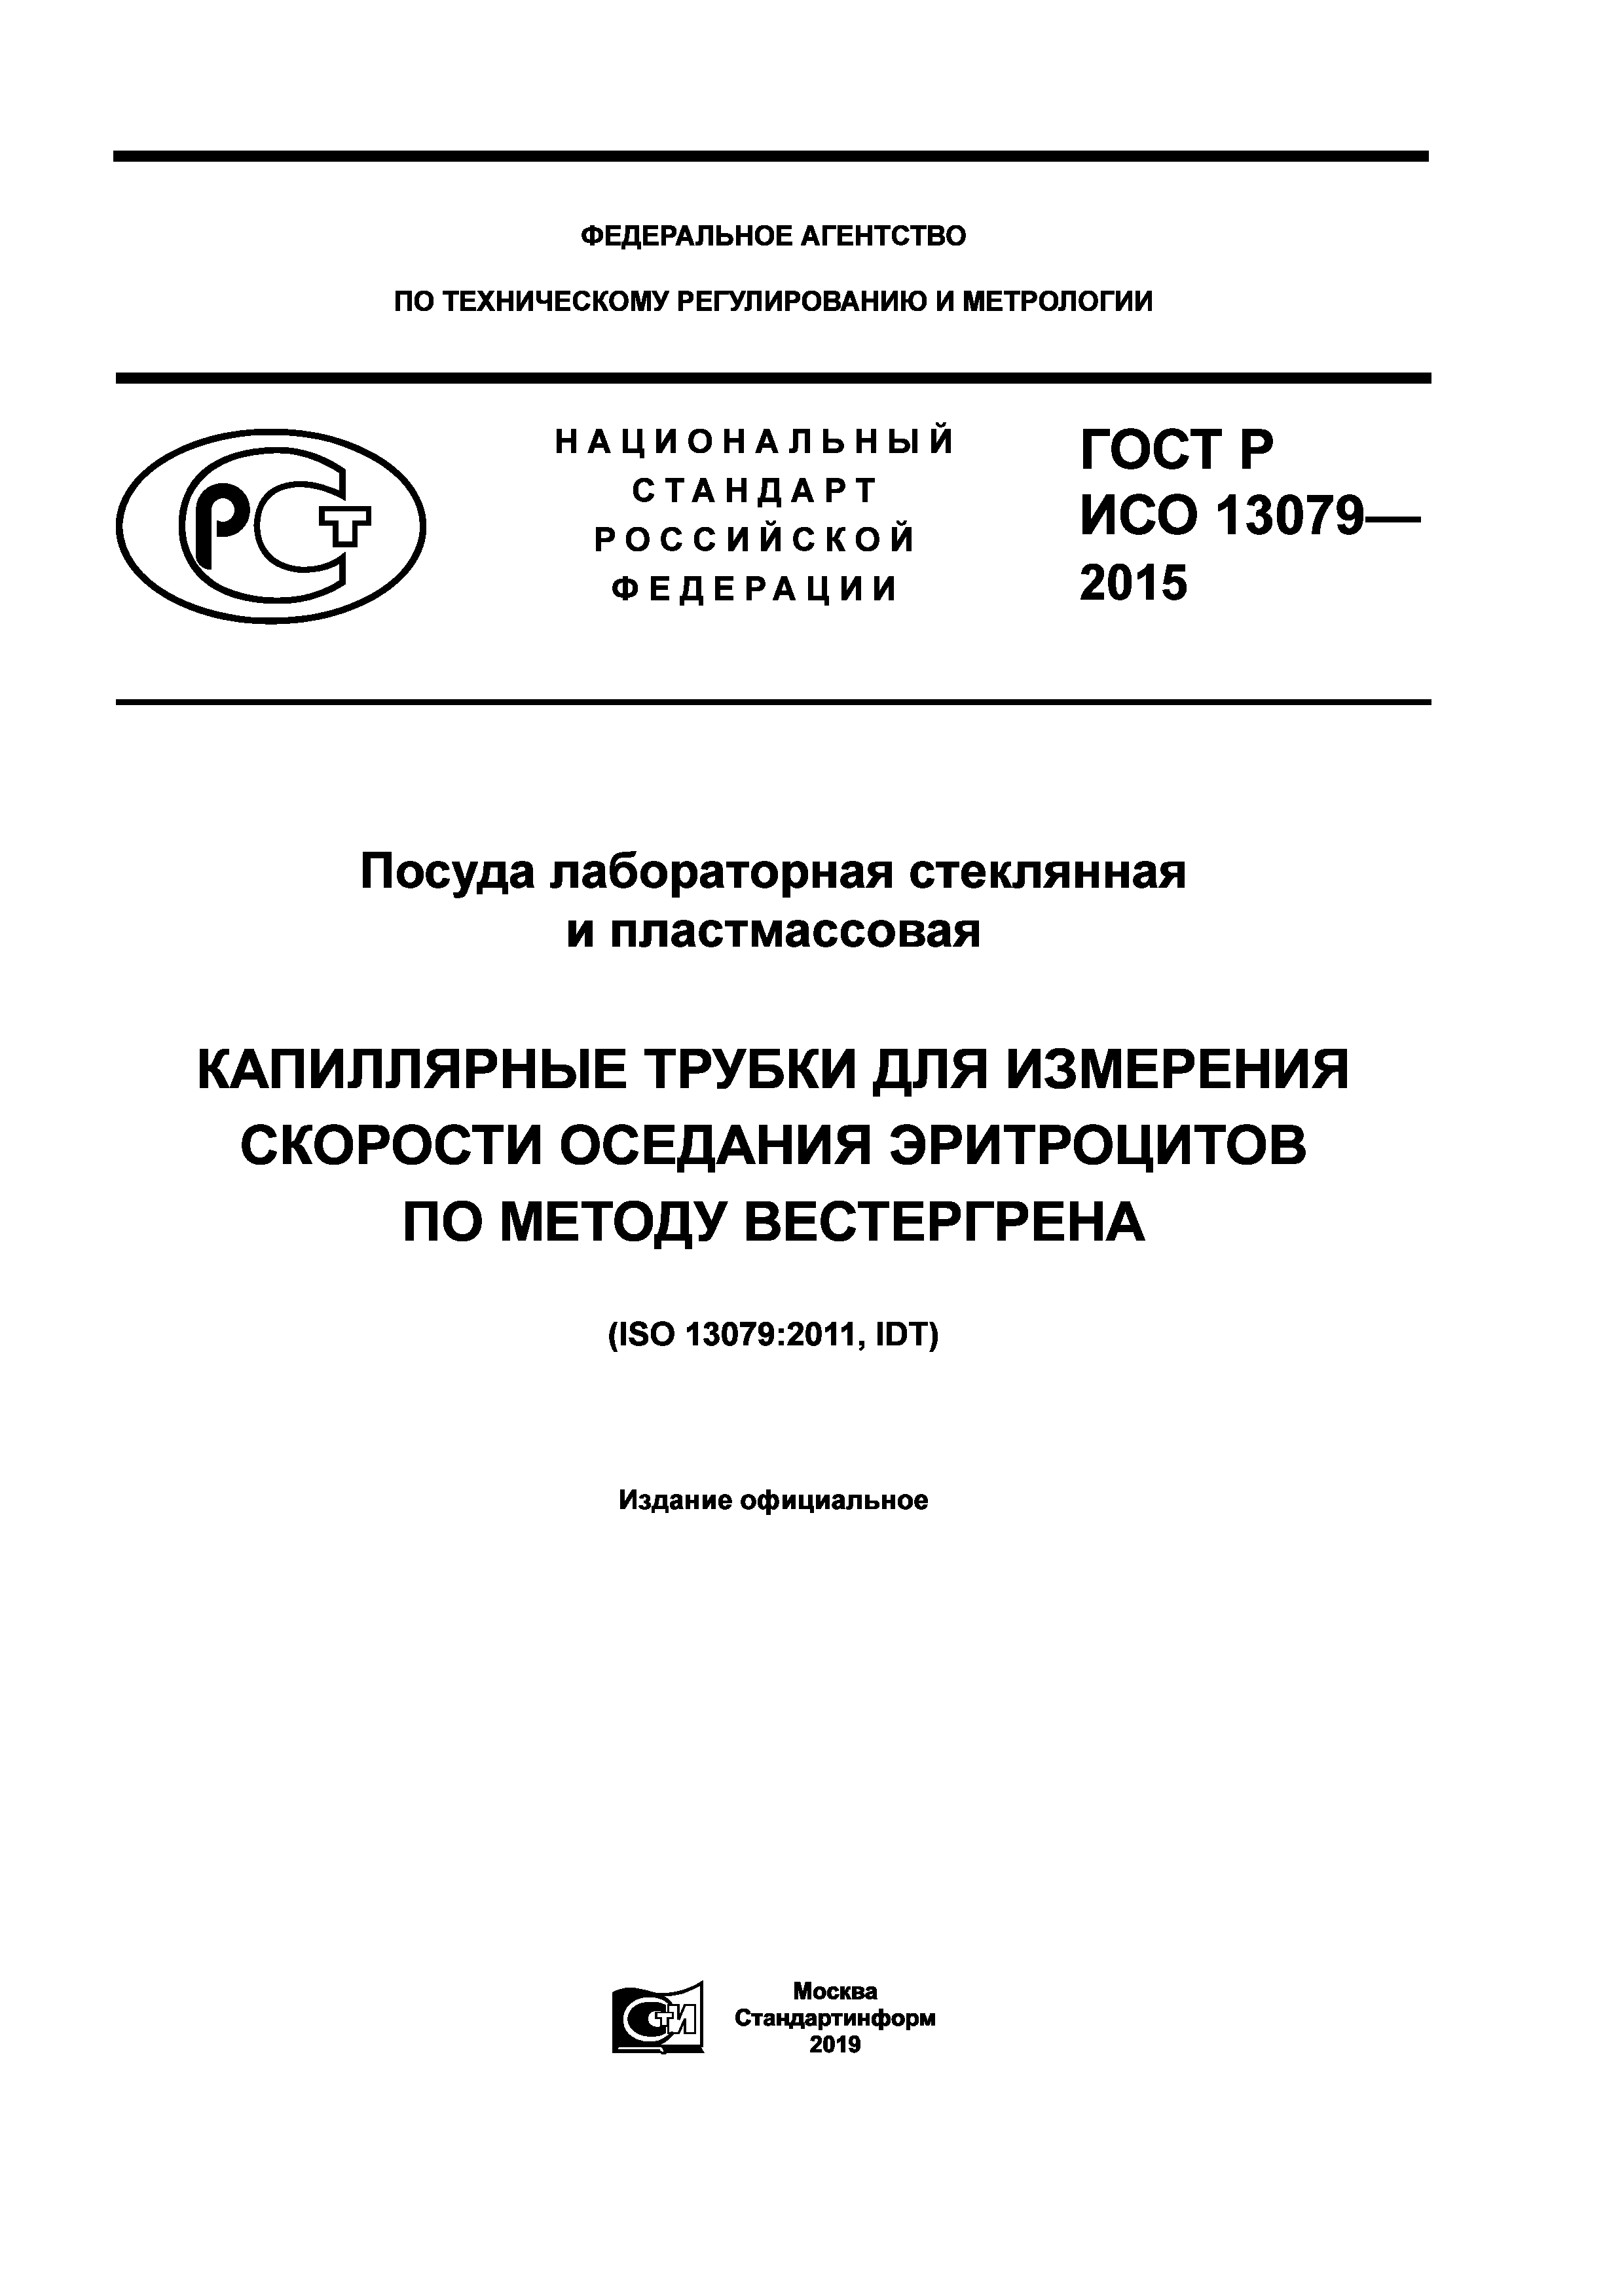 ГОСТ Р ИСО 13079-2015